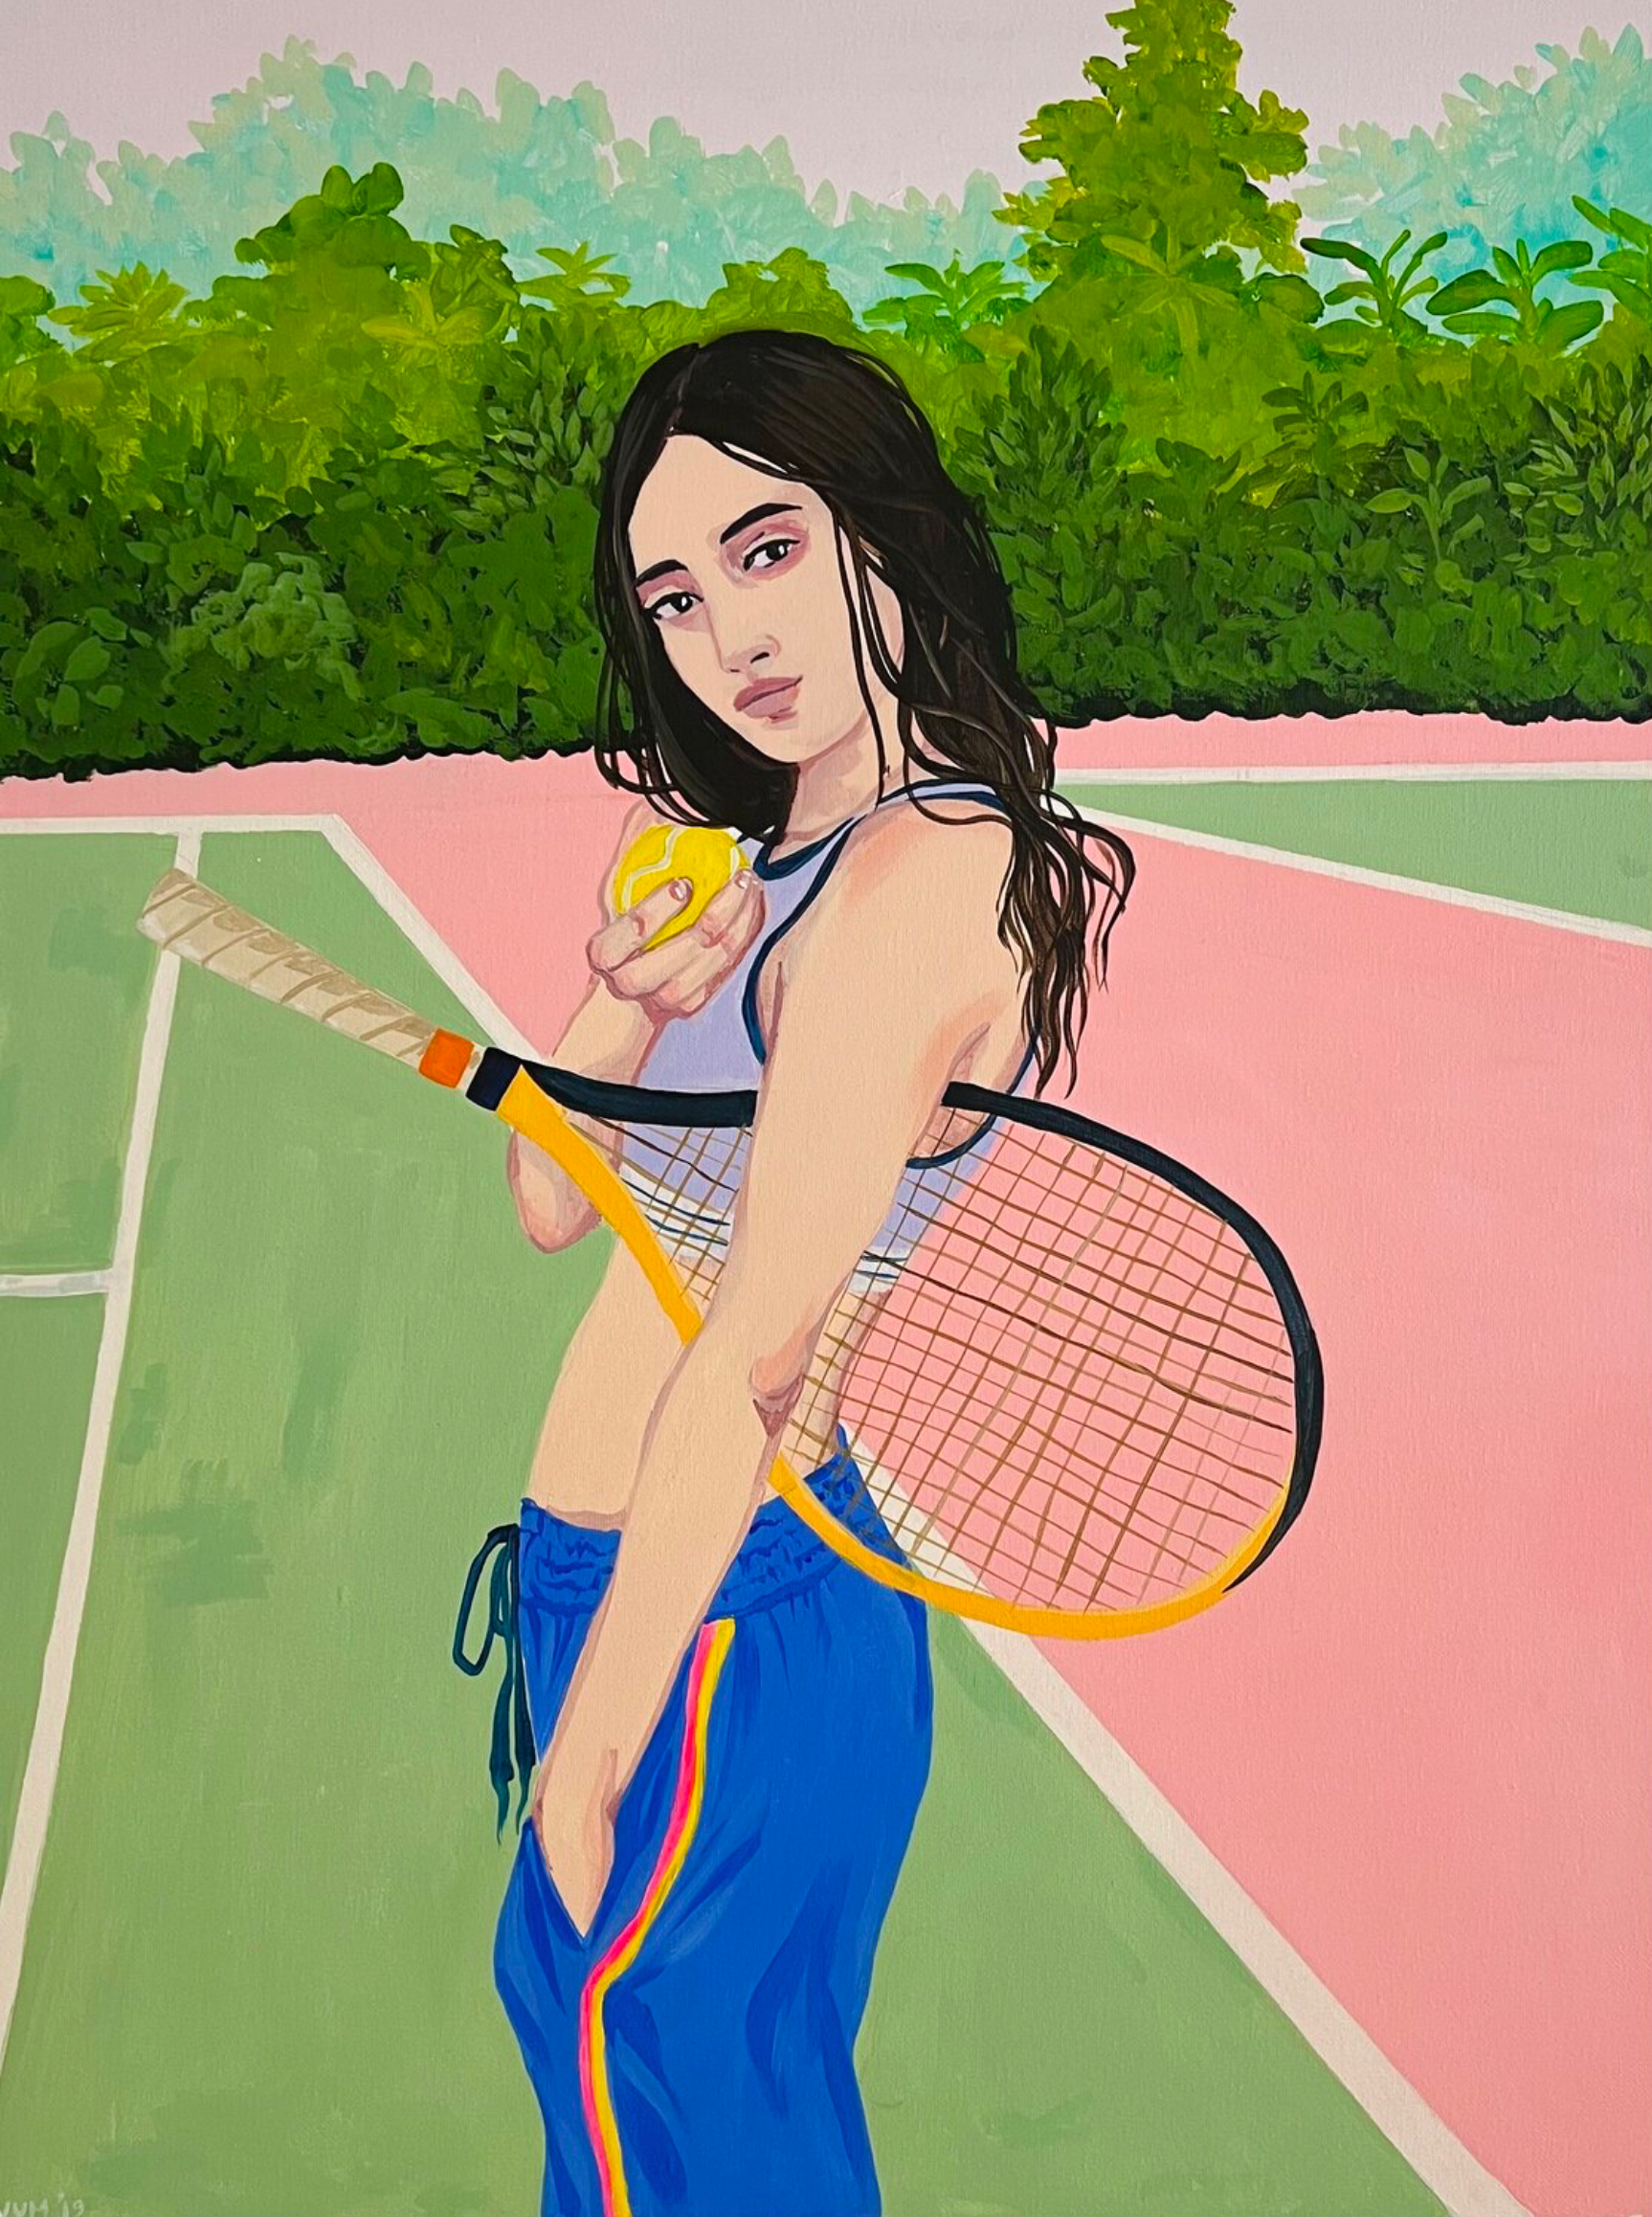 Vanessa van Meerhaeghe ist eine in Brüssel ansässige Malerin. Ihr Frauenporträt Gemälde "Come play with me" zeigt eine junge Frau, verspielt und voller Energie, die auf einem Tennisplatz steht.